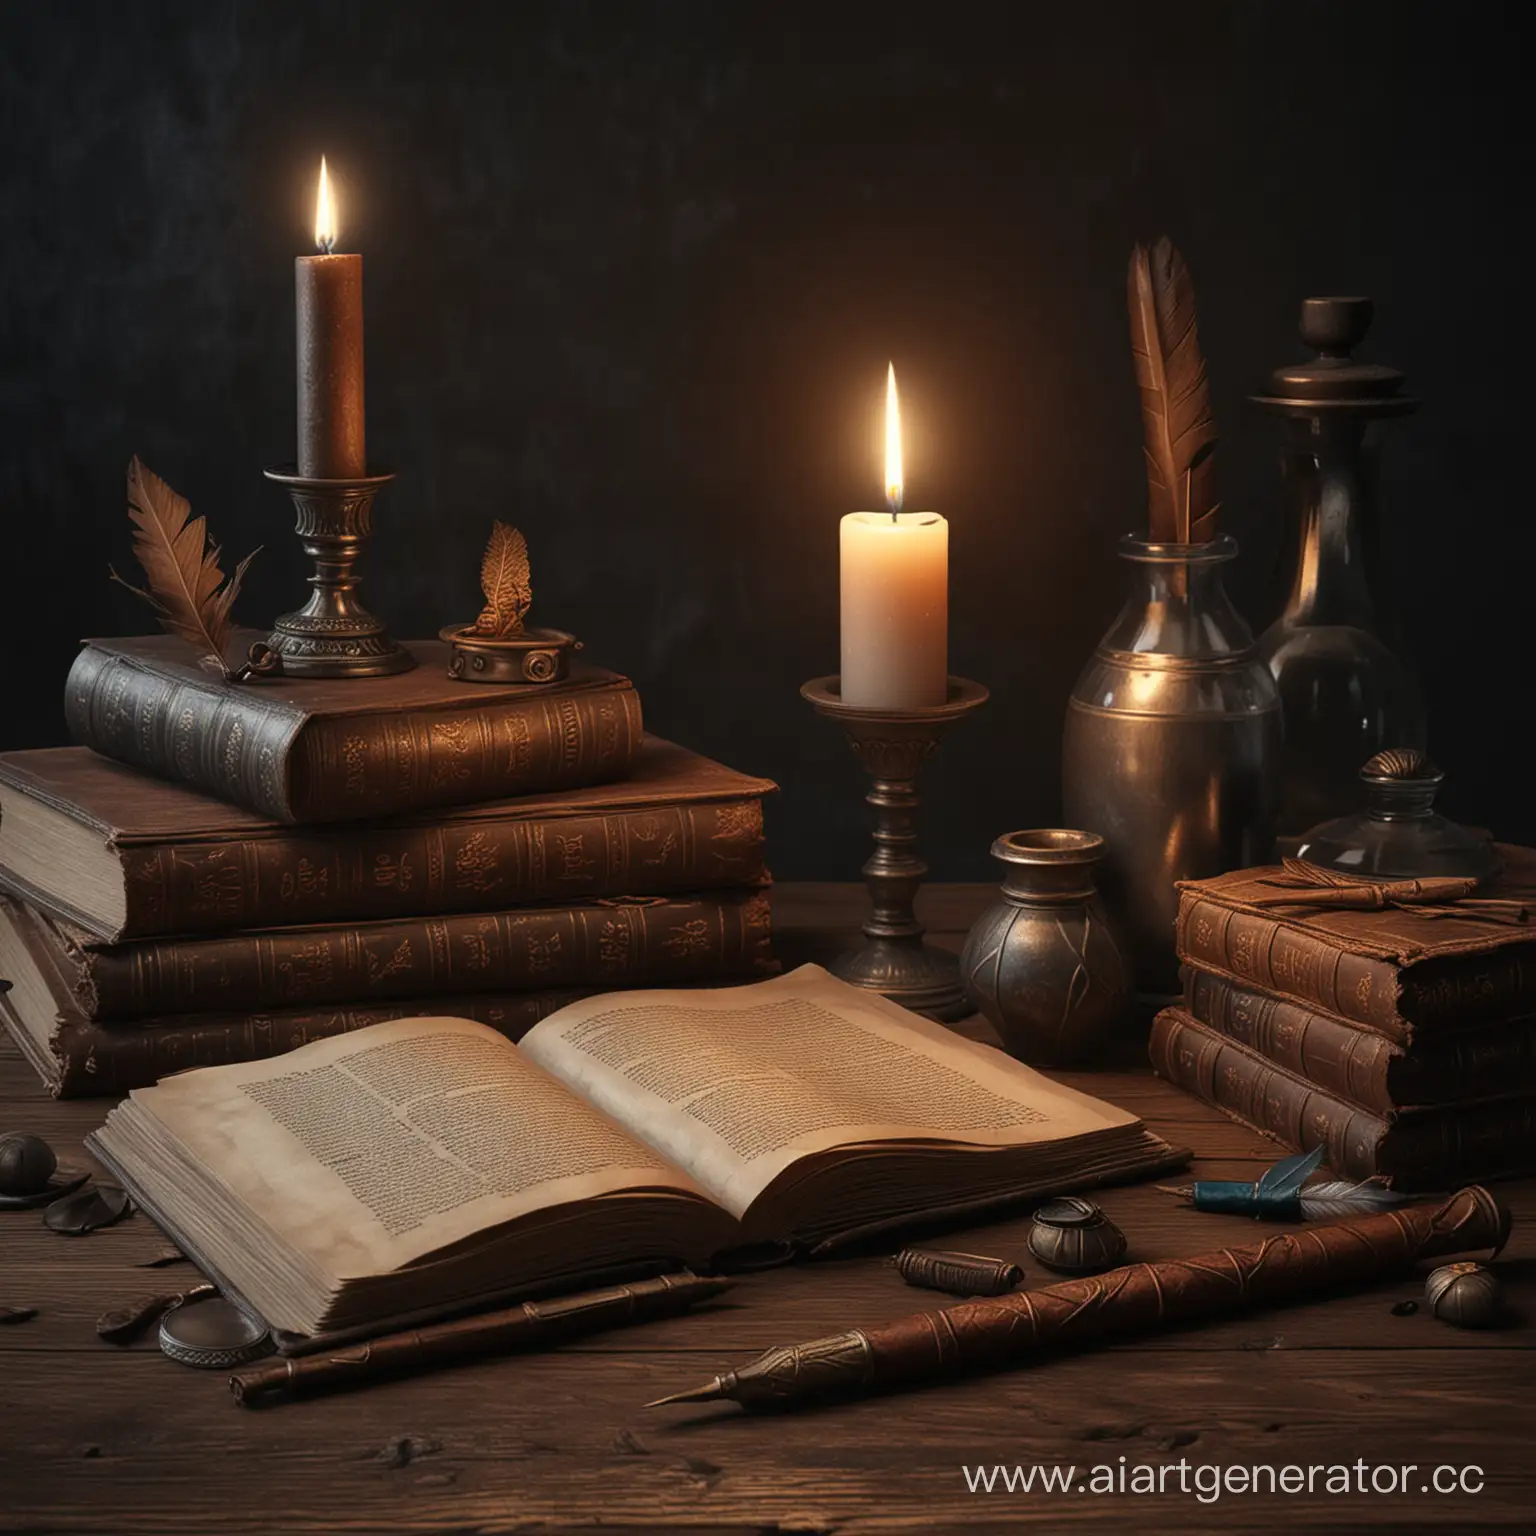 старинные книги, полумрак, свеча, перо чернильница, немного магии, крупный план, фотореализм